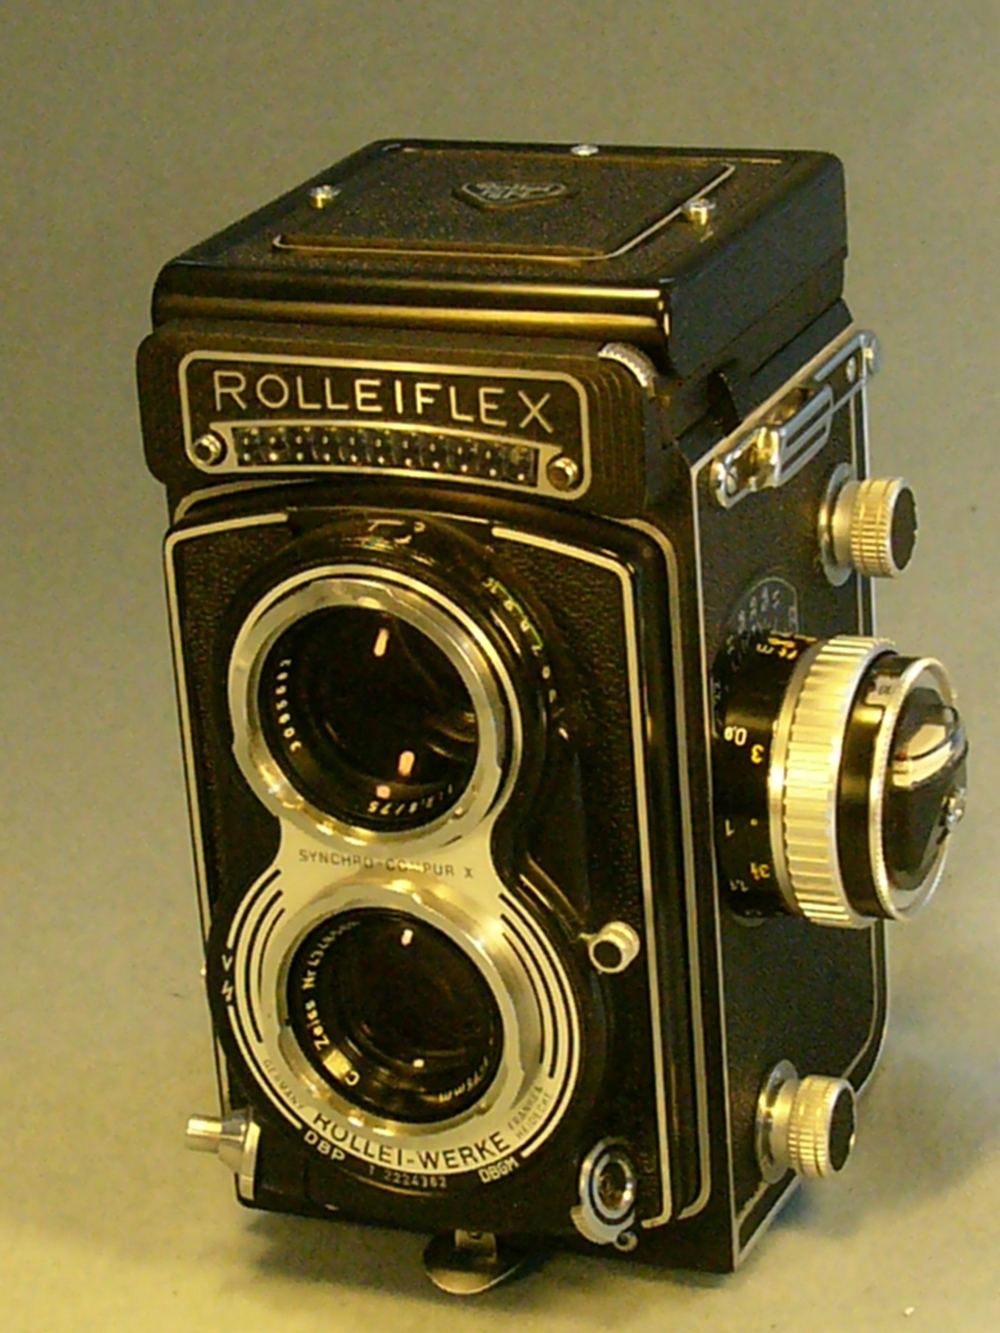 Rollei Rolleiflex "T" 6x6 mit Belichtungsmesser absolut neuwertig